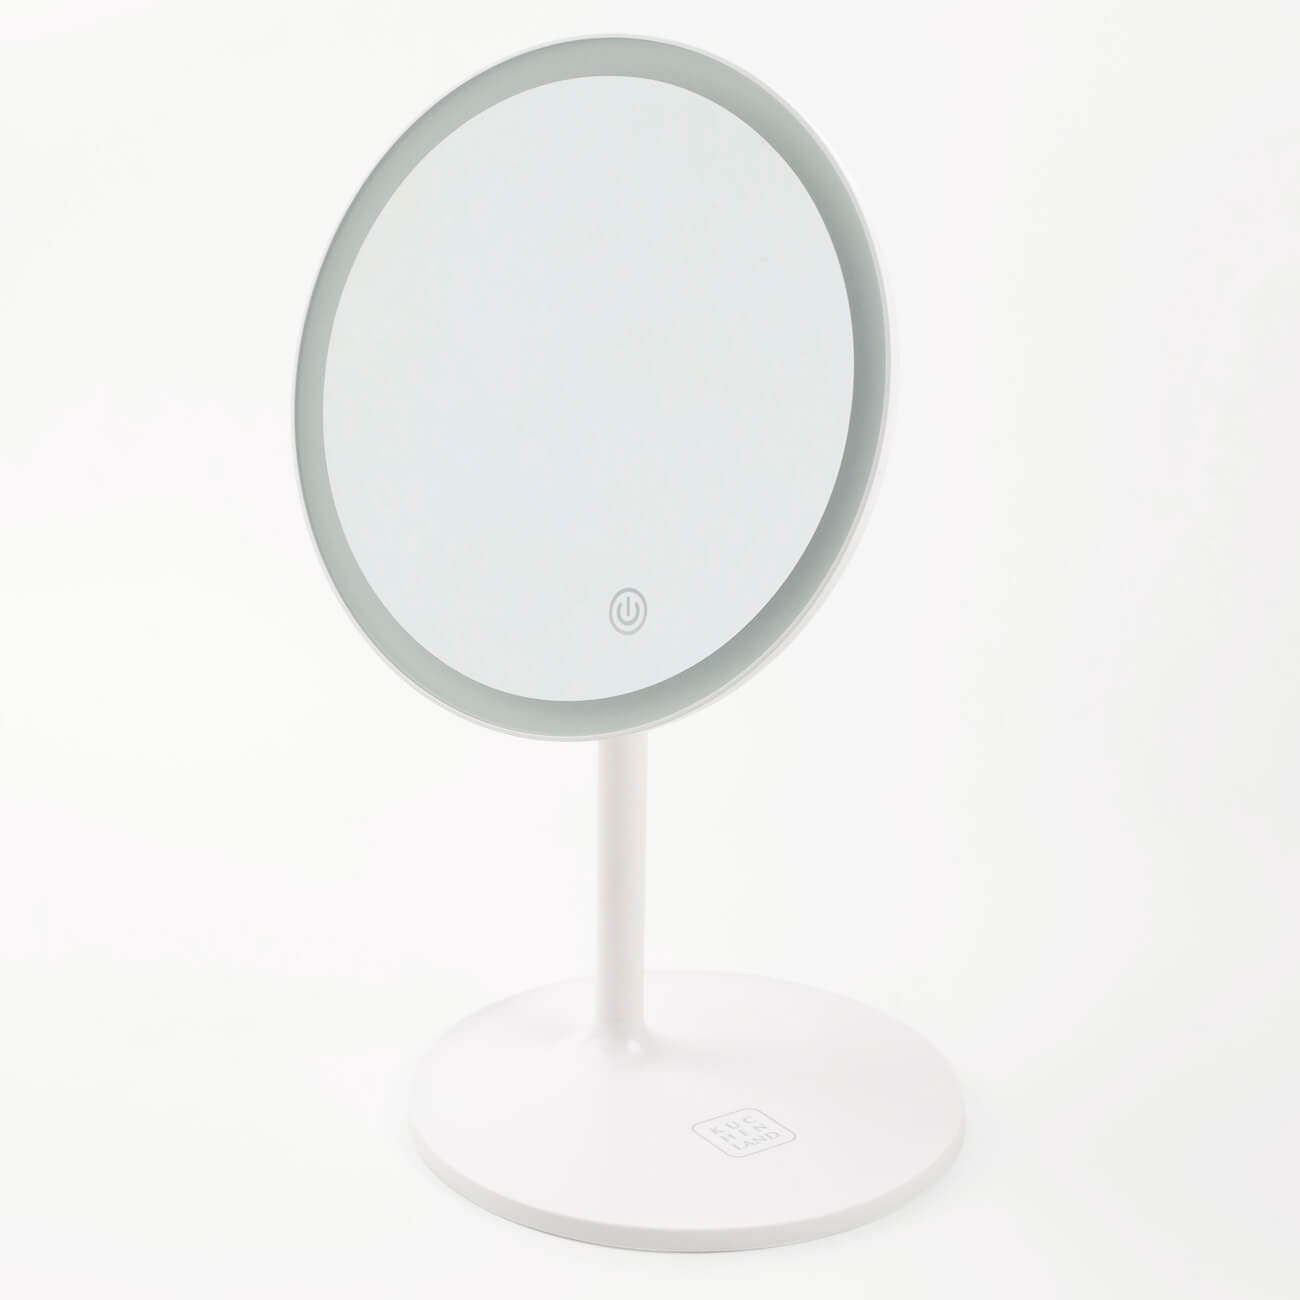 Зеркало настольное, 33 см, с подсветкой, на подставке, пластик, круглое, белое, Vesta